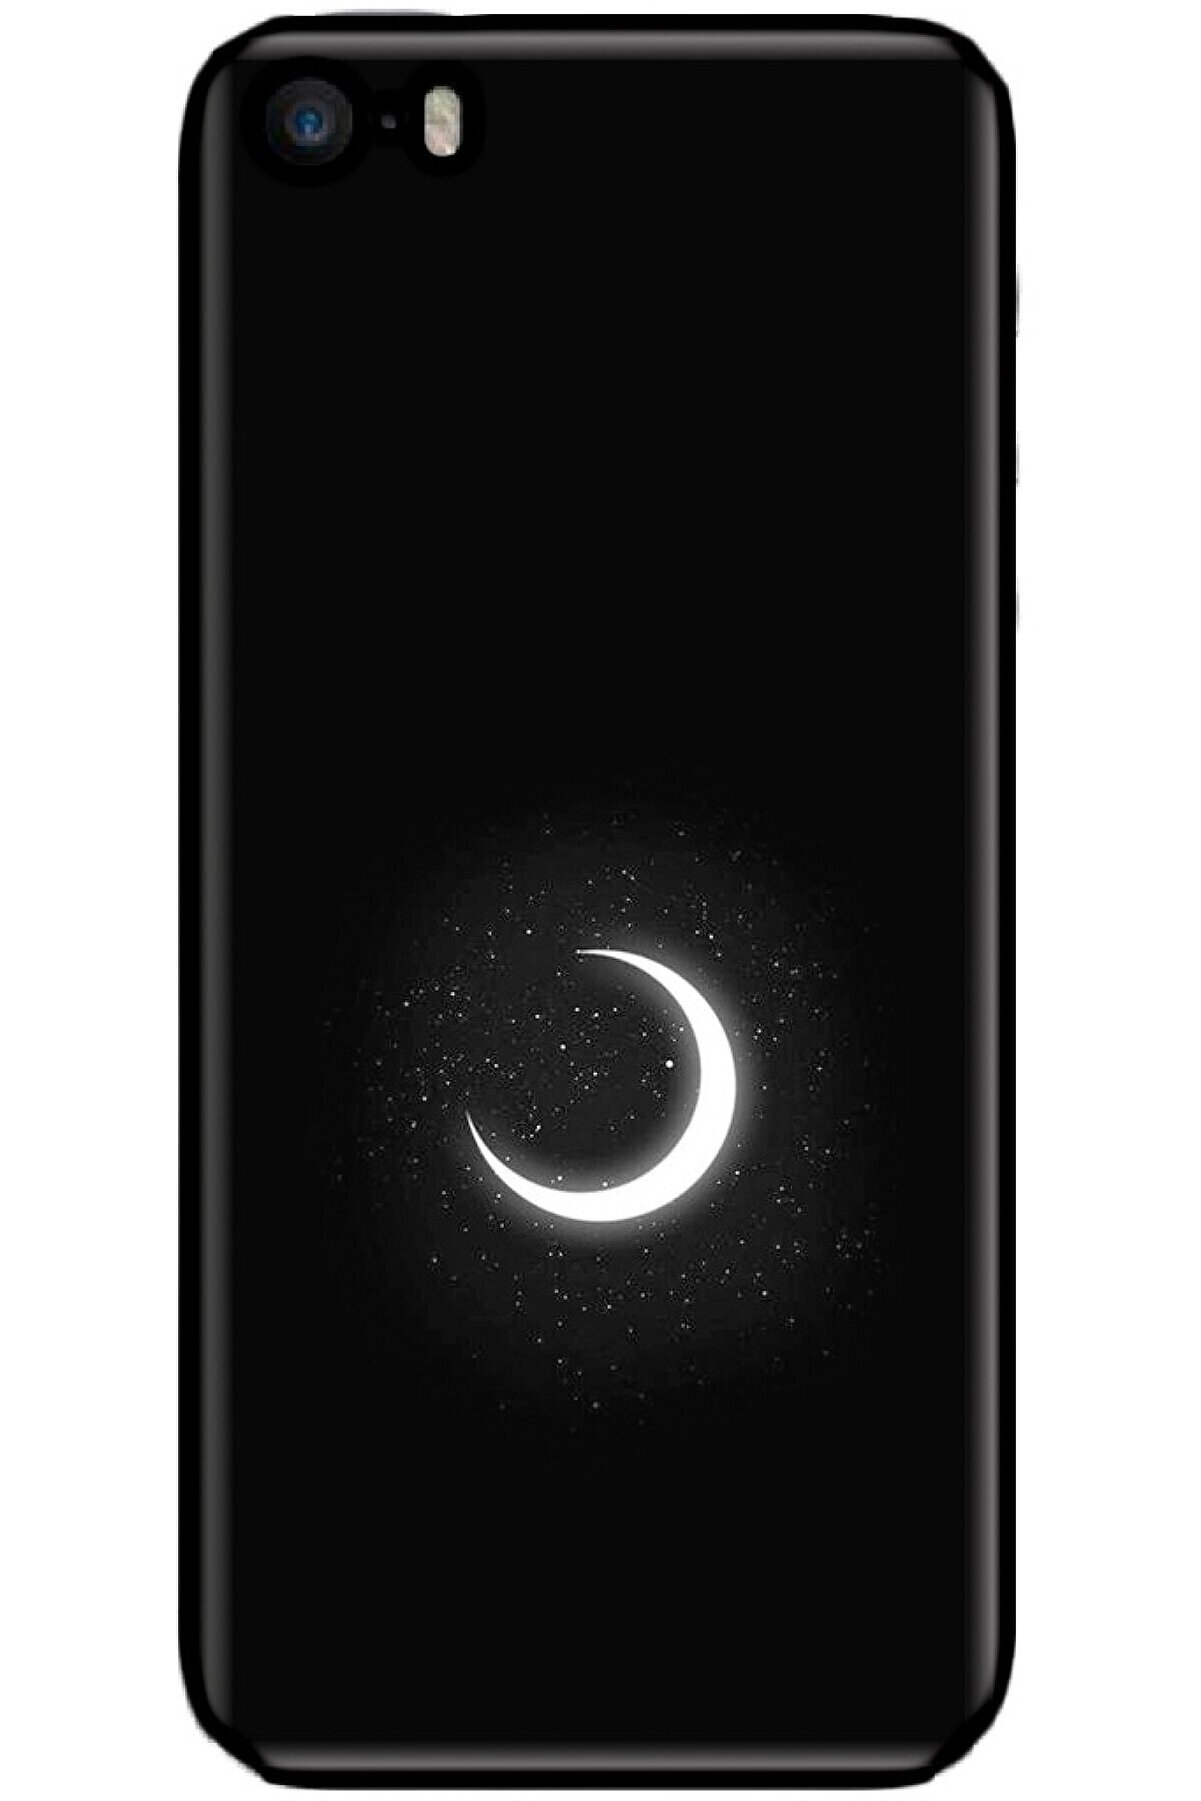 Noprin Apple Iphone 5s Kılıf Silikon Baskılı Desenli Arka Kapak